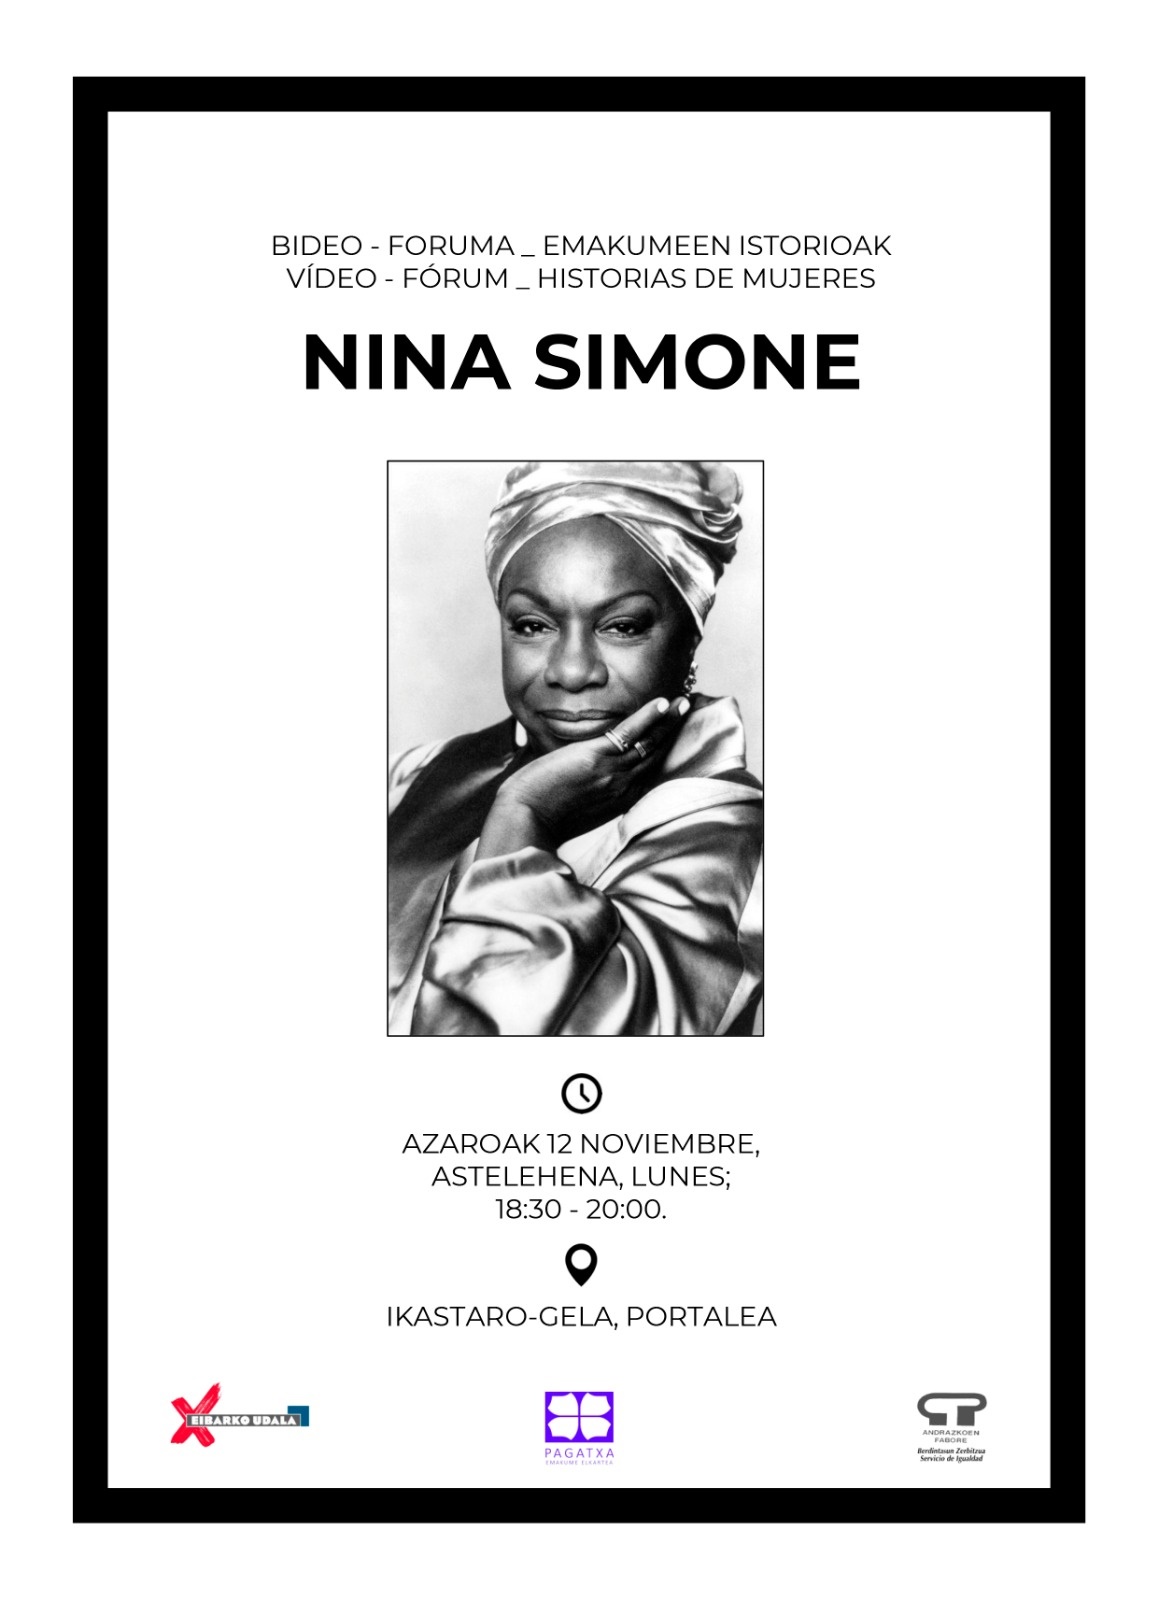 Bideo Foruma Emakumeen istorioak: Nina Simone 